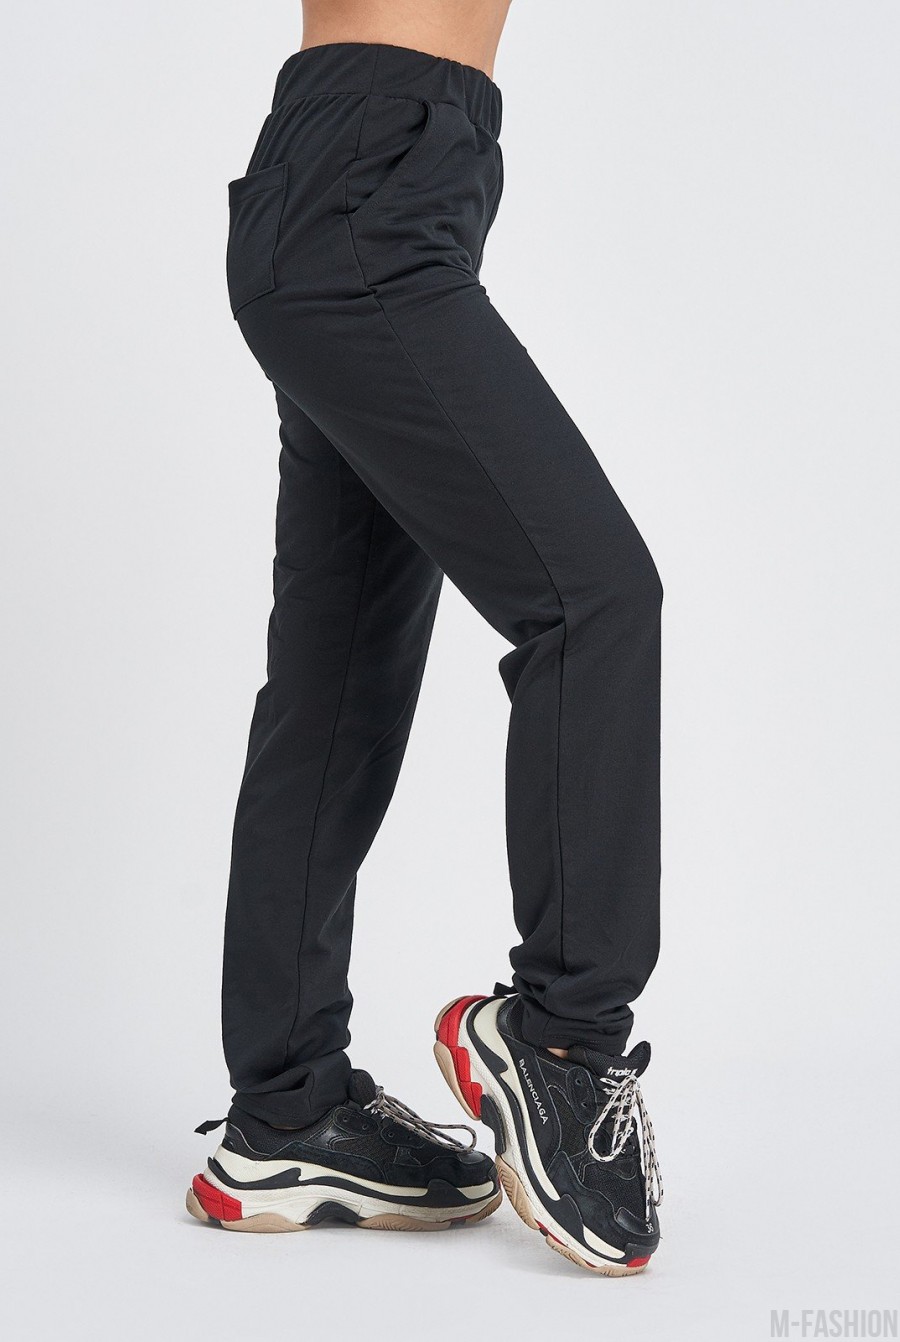 Черные штаны с карманами выполненные из трикотажа- Фото 2